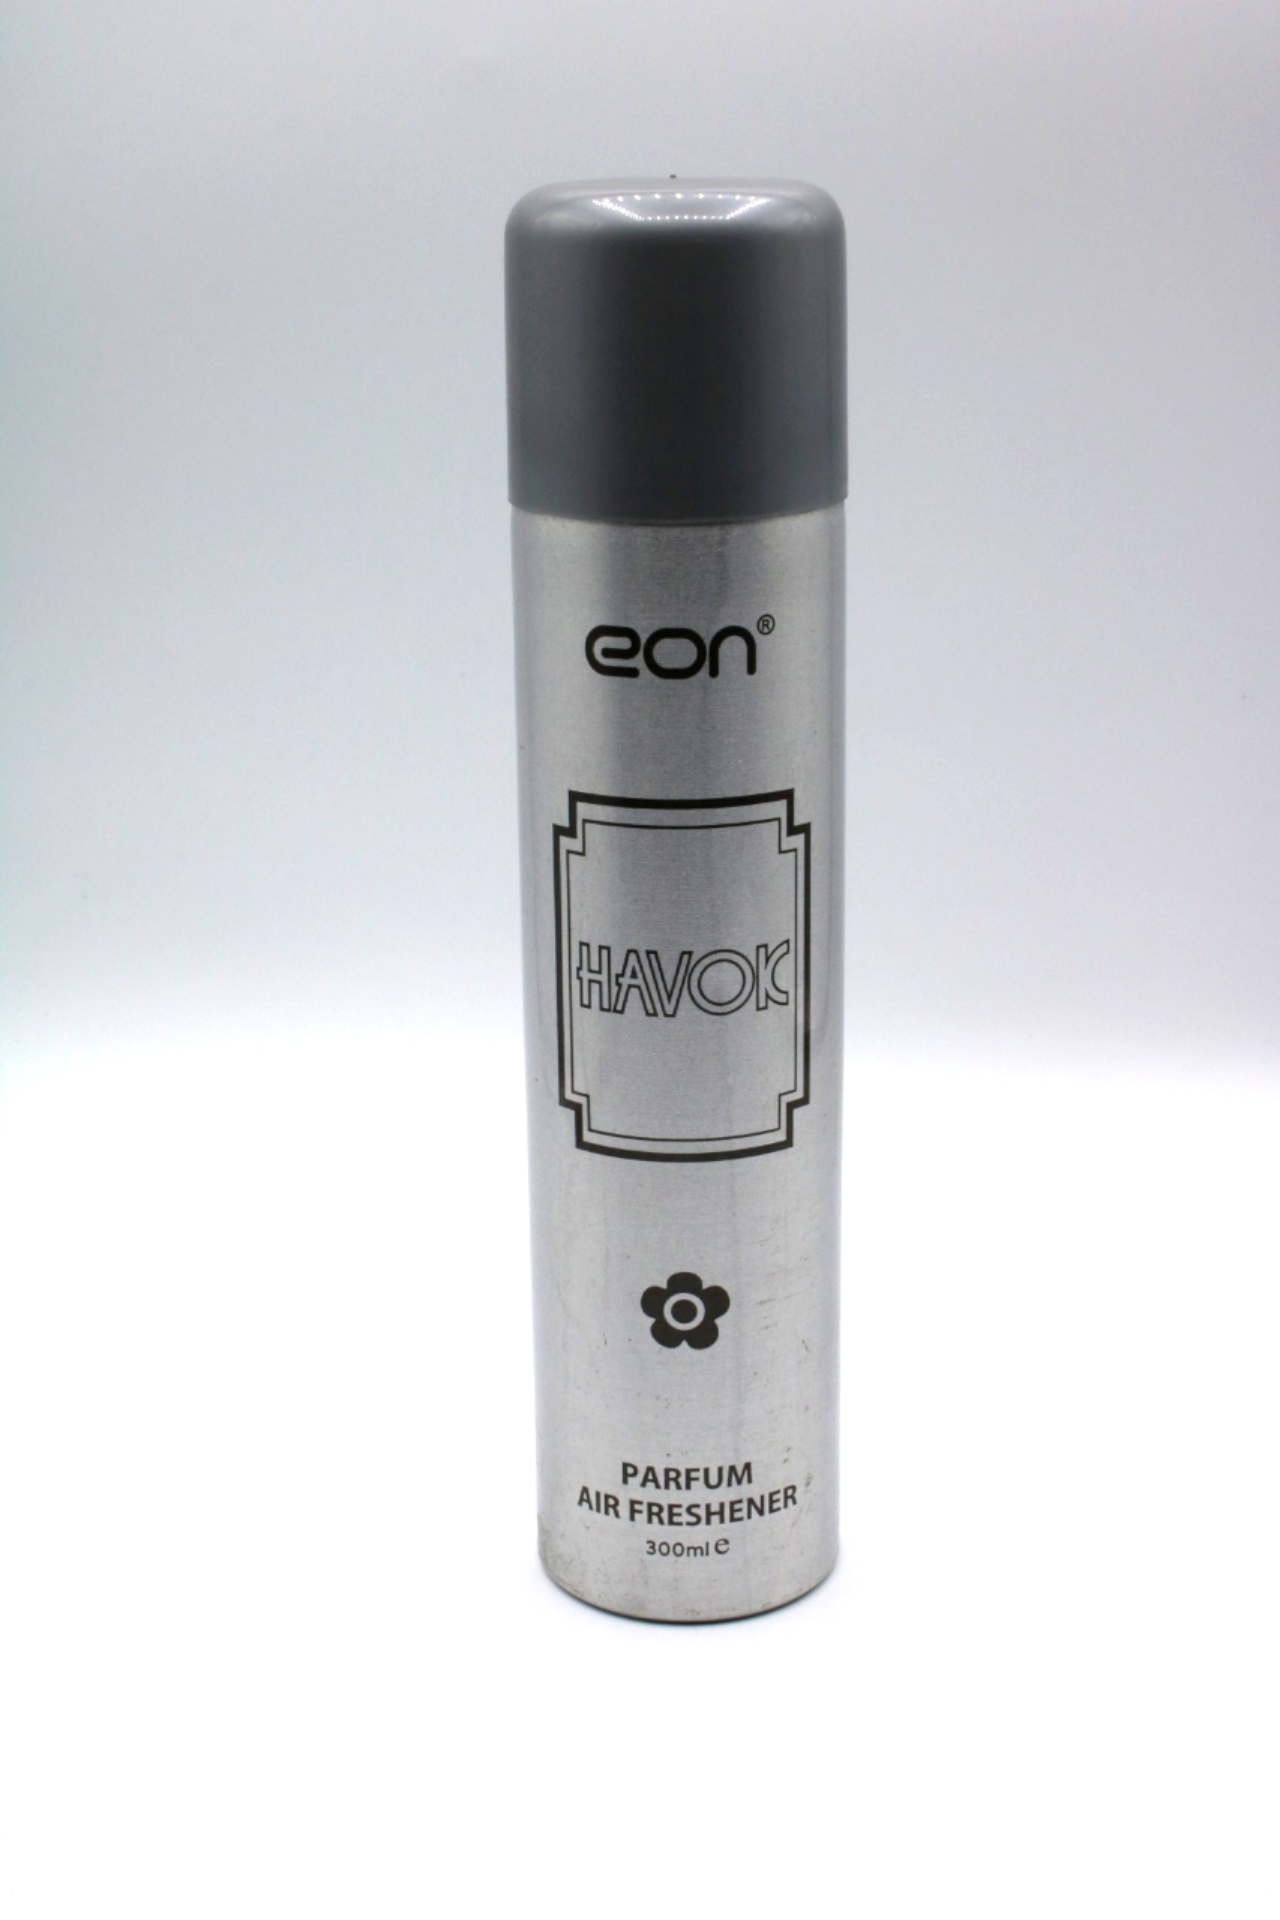 Eon havok Parfum Air Freshener